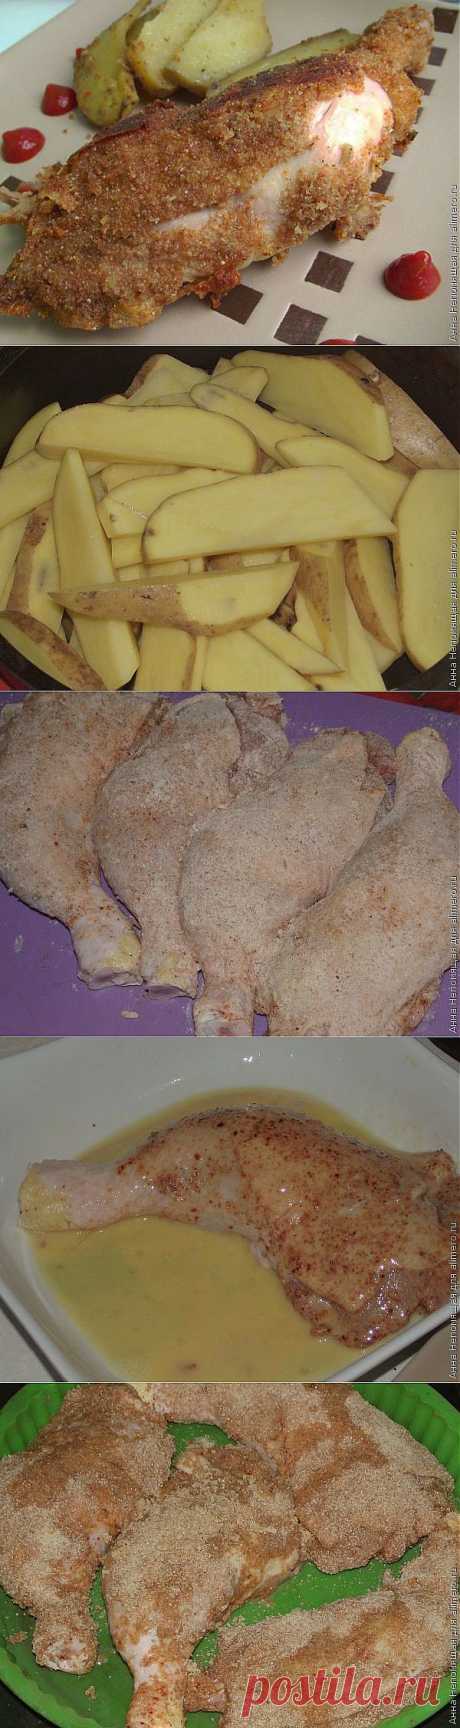 Курица в панировке / Рецепты с фото